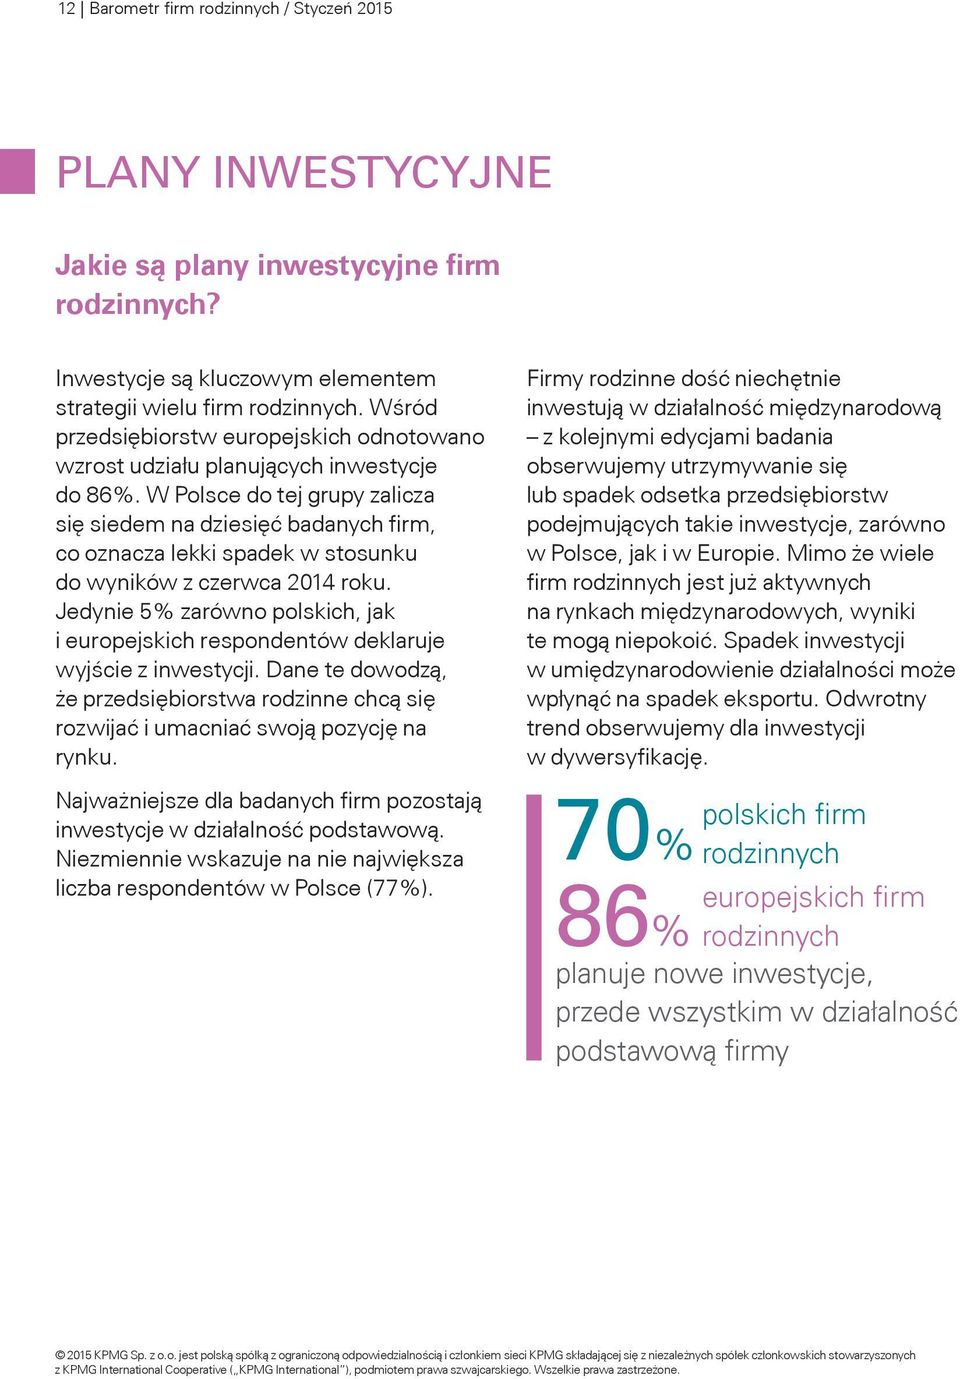 W Polsce do tej grupy zalicza się siedem na dziesięć badanych firm, co oznacza lekki spadek w stosunku do wyników z czerwca 2014 roku.